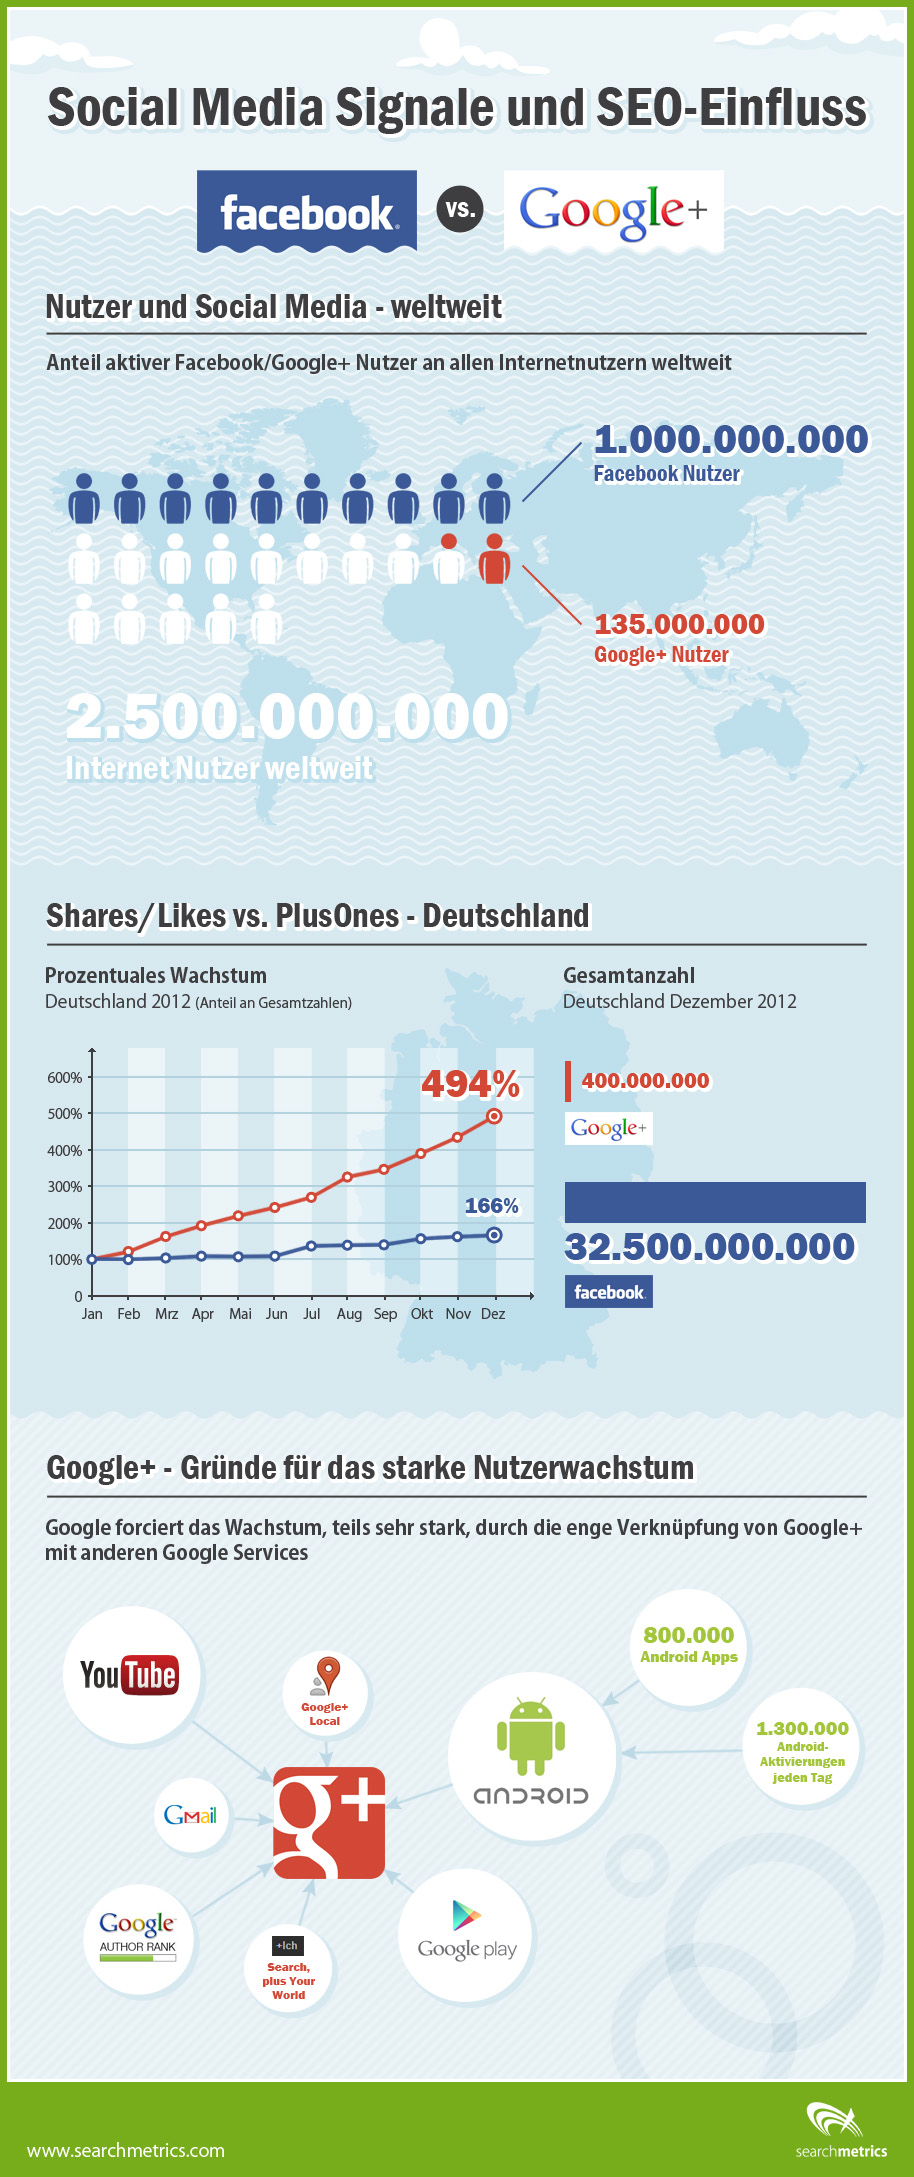 Infografik - Social Signals und SEO: Facebook vs Google+